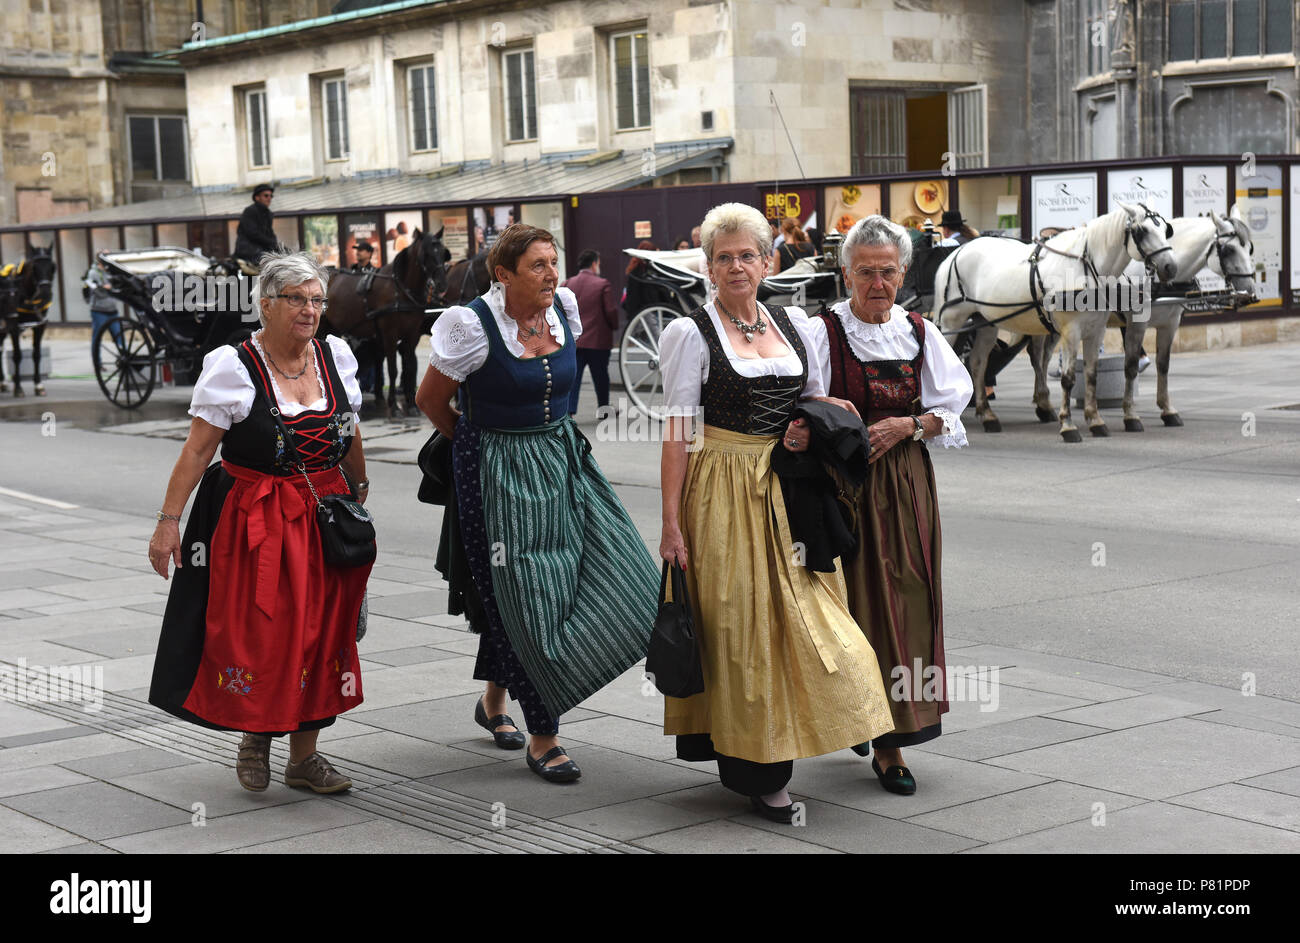 Traje tradicional austria fotografías e imágenes de alta resolución - Alamy